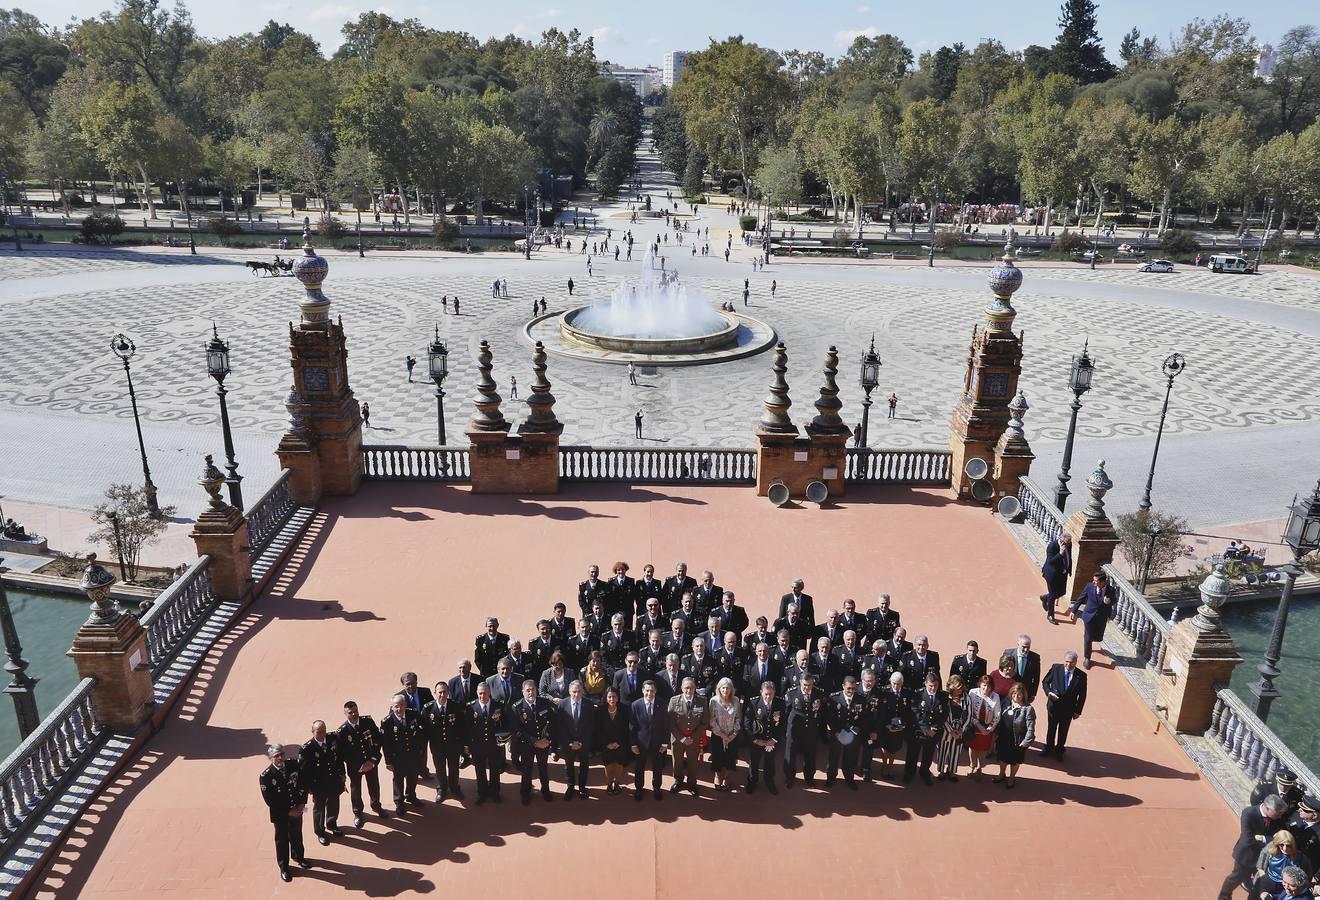 25 aniversario de la Policía autonómica de Andalucía, en Sevilla